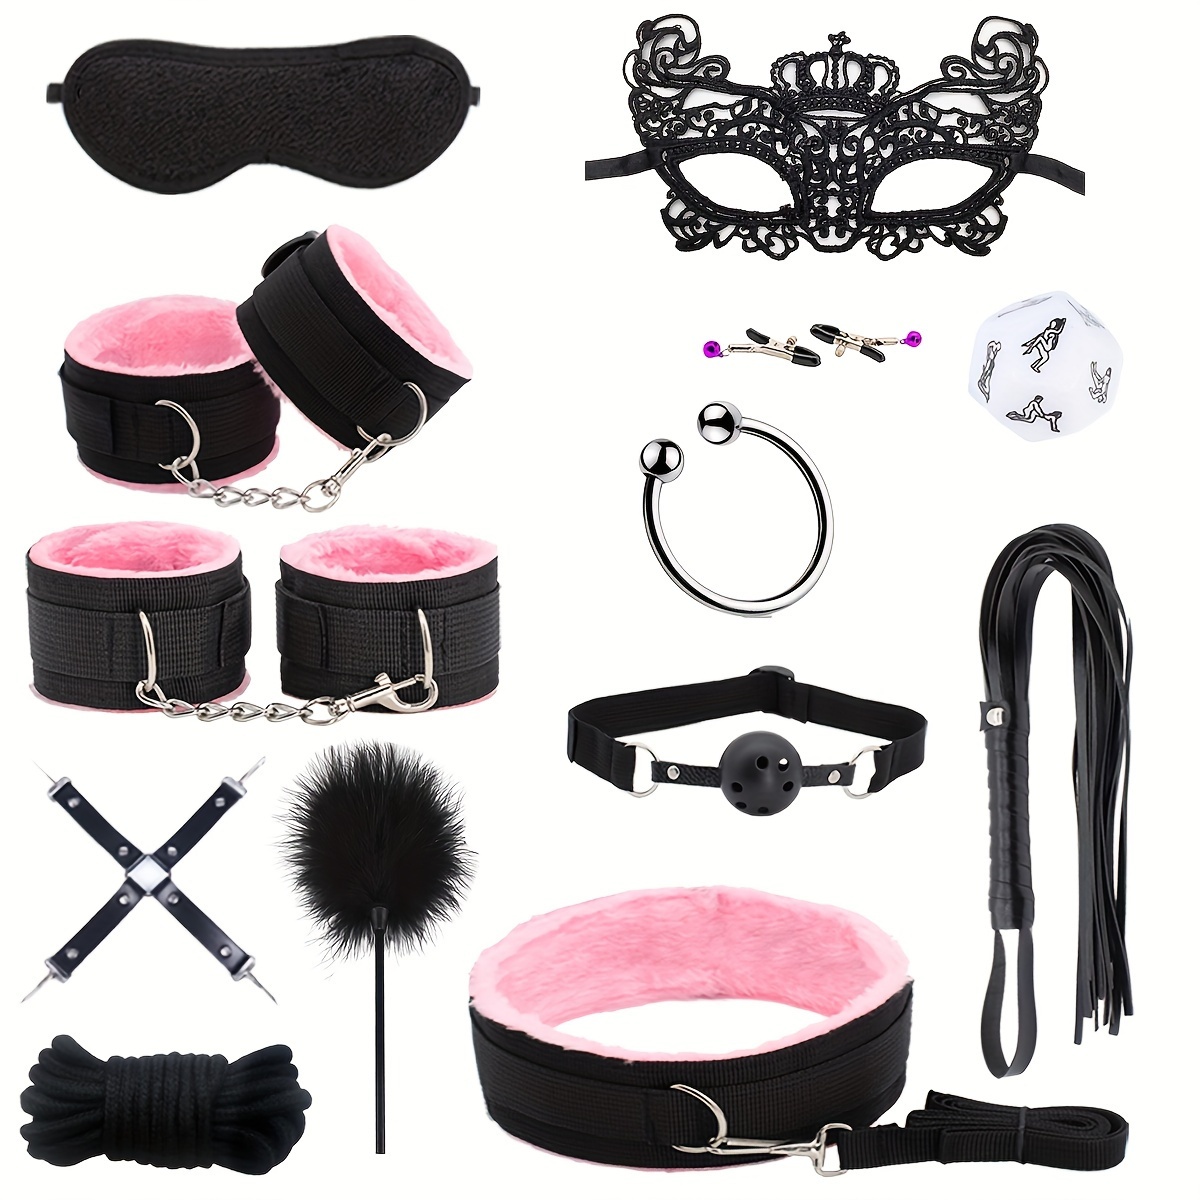  Kit de BDSM, accesorios sexuales para parejas adultas